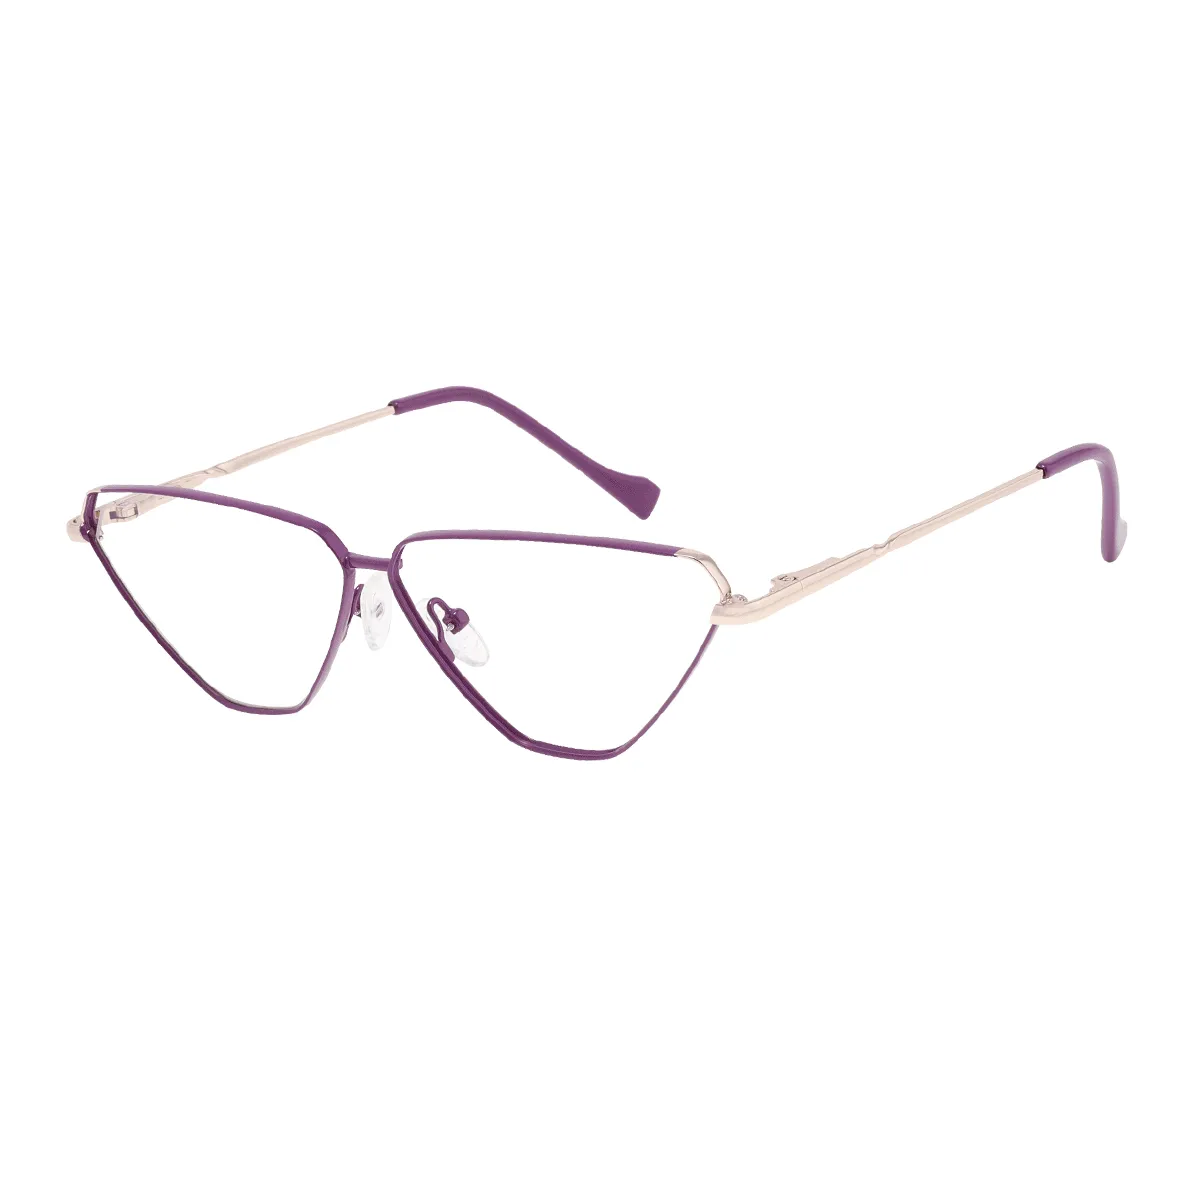 Mercer - Geometric Purple/gold Glasses for Women